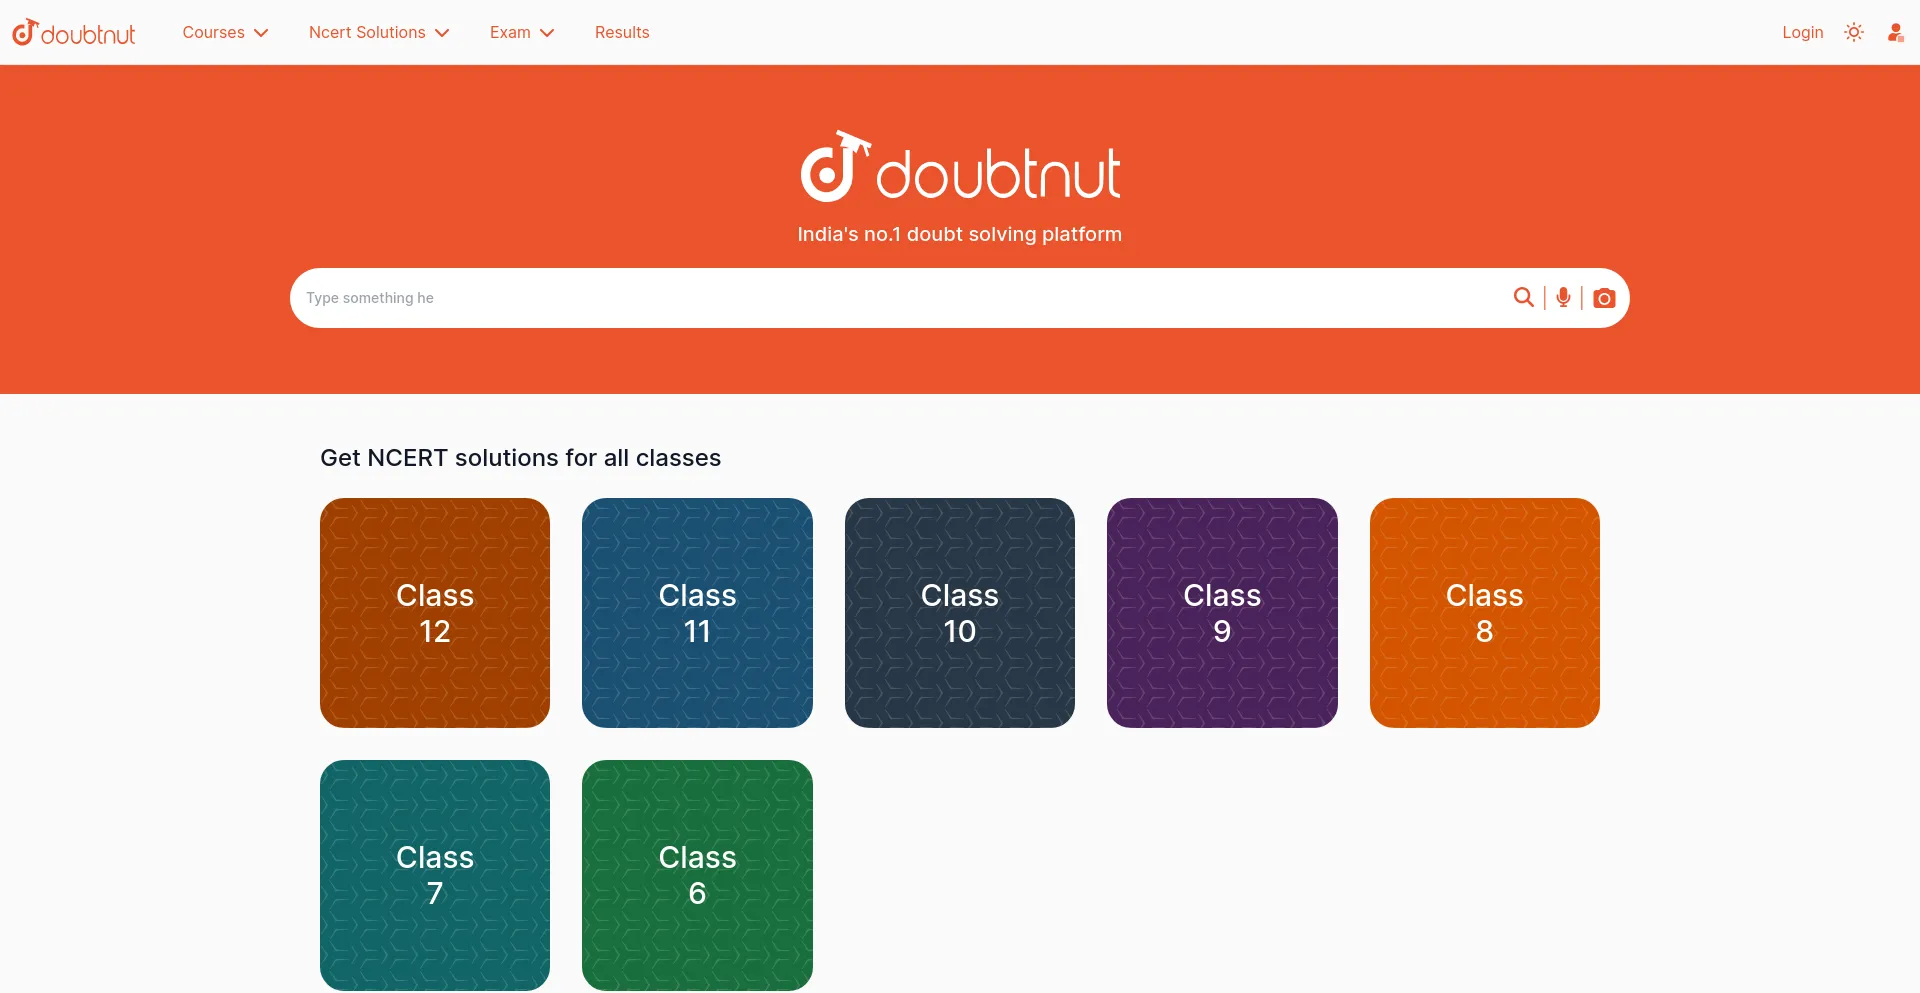 doubtnut.com